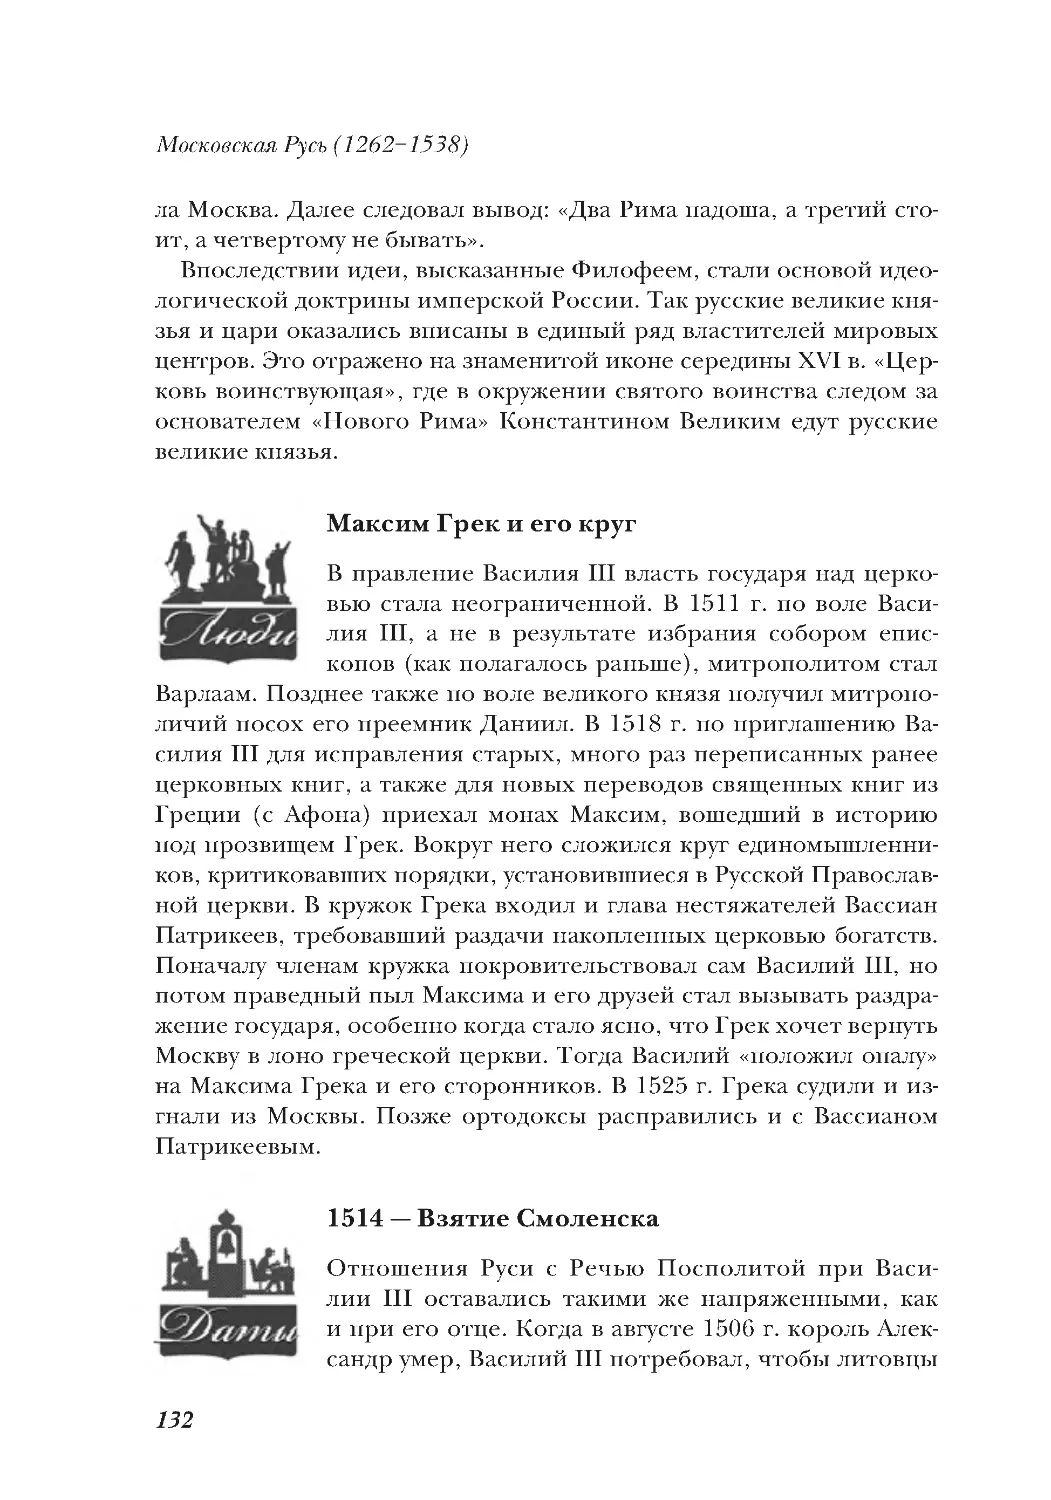 Максим Грек и его круг
1514 — Взятие Смоленска